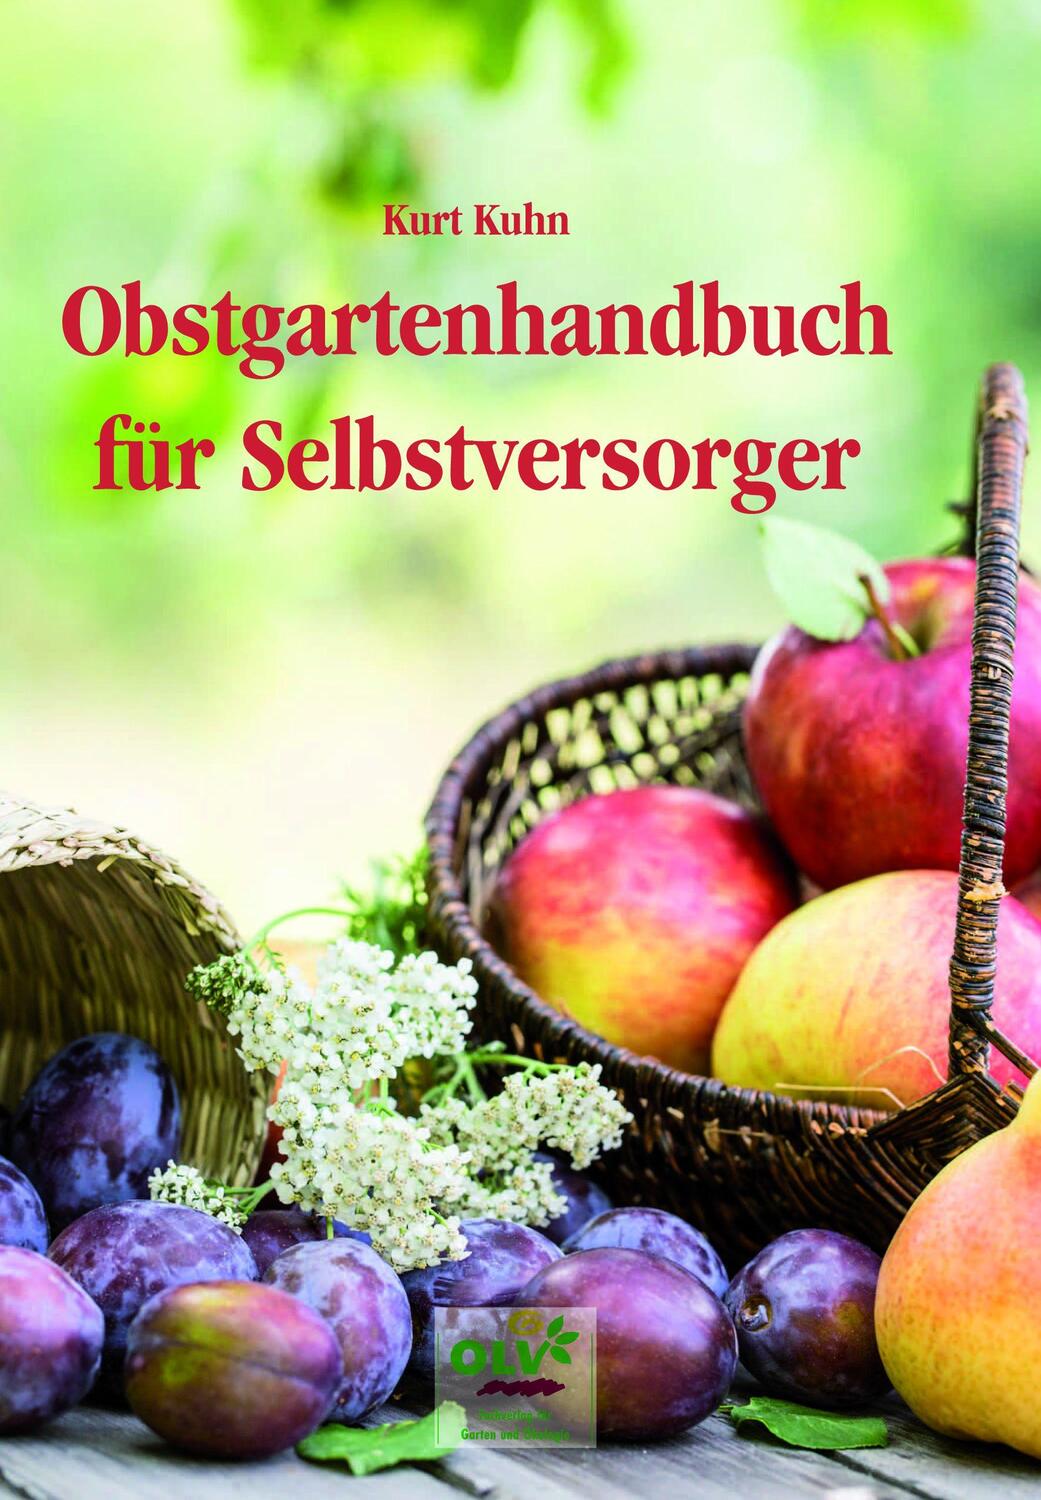 Obstgartenhandbuch für Selbstversorger - Kuhn, Kurt